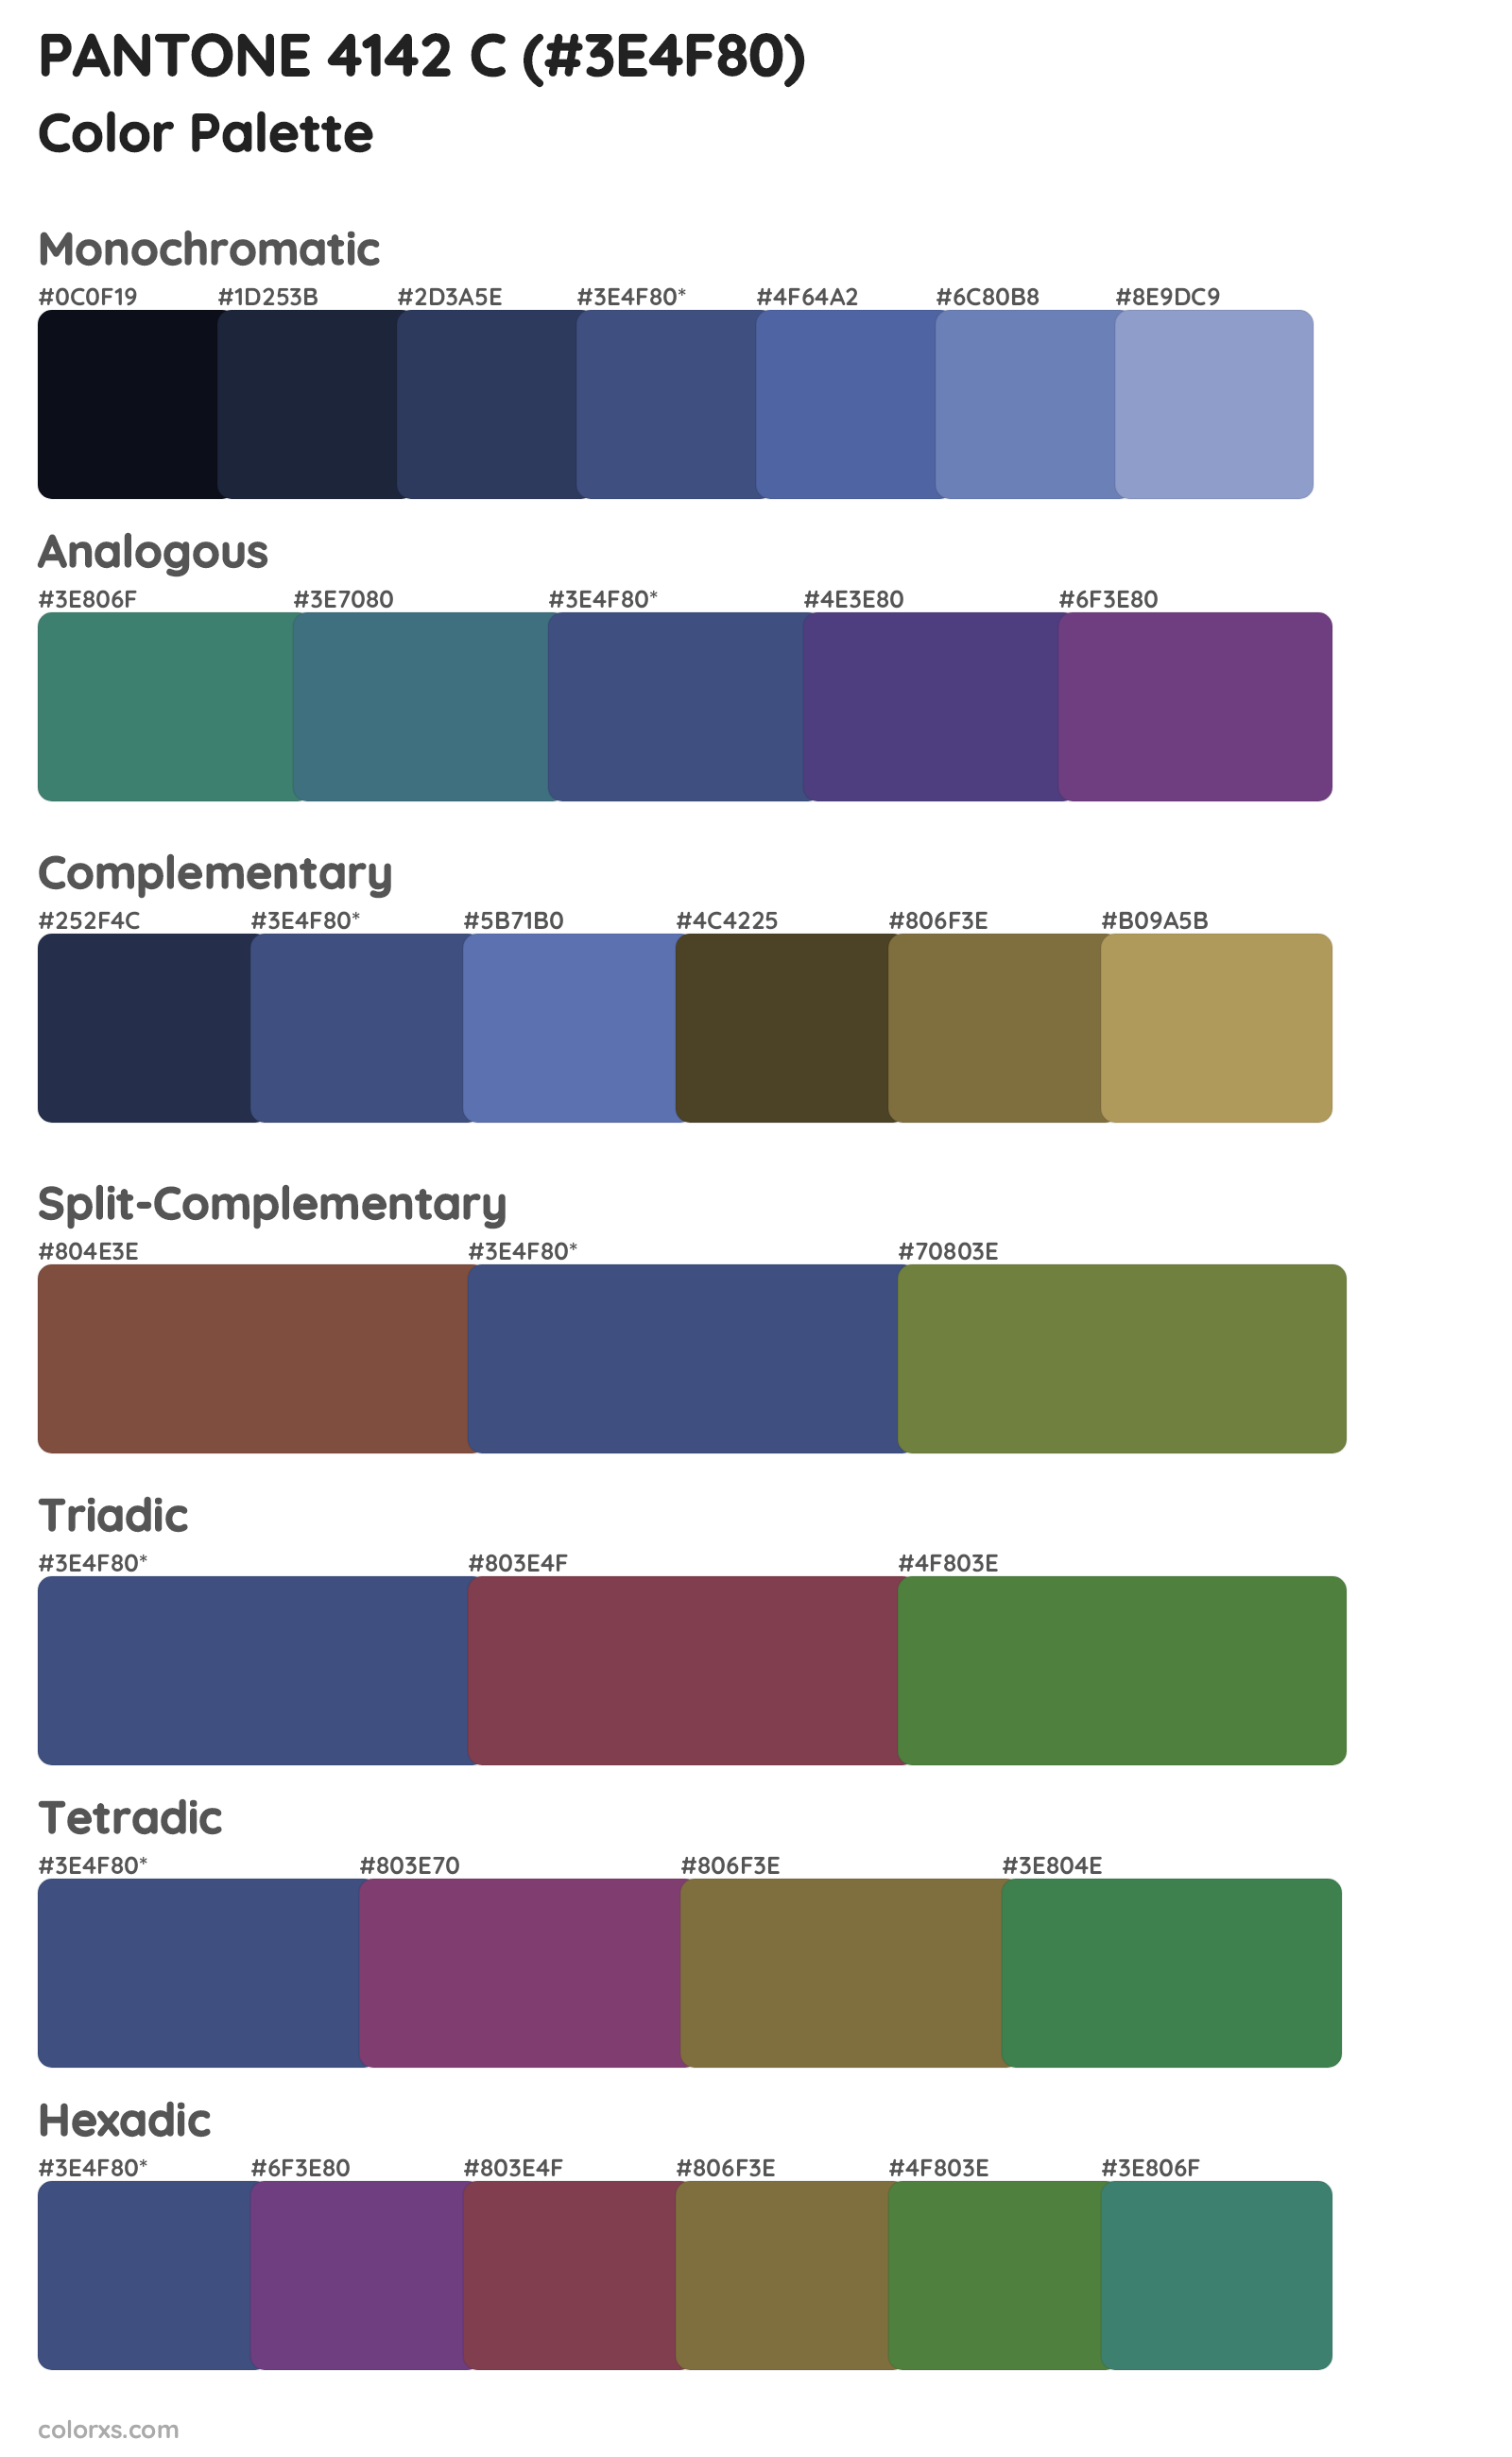 PANTONE 4142 C Color Scheme Palettes